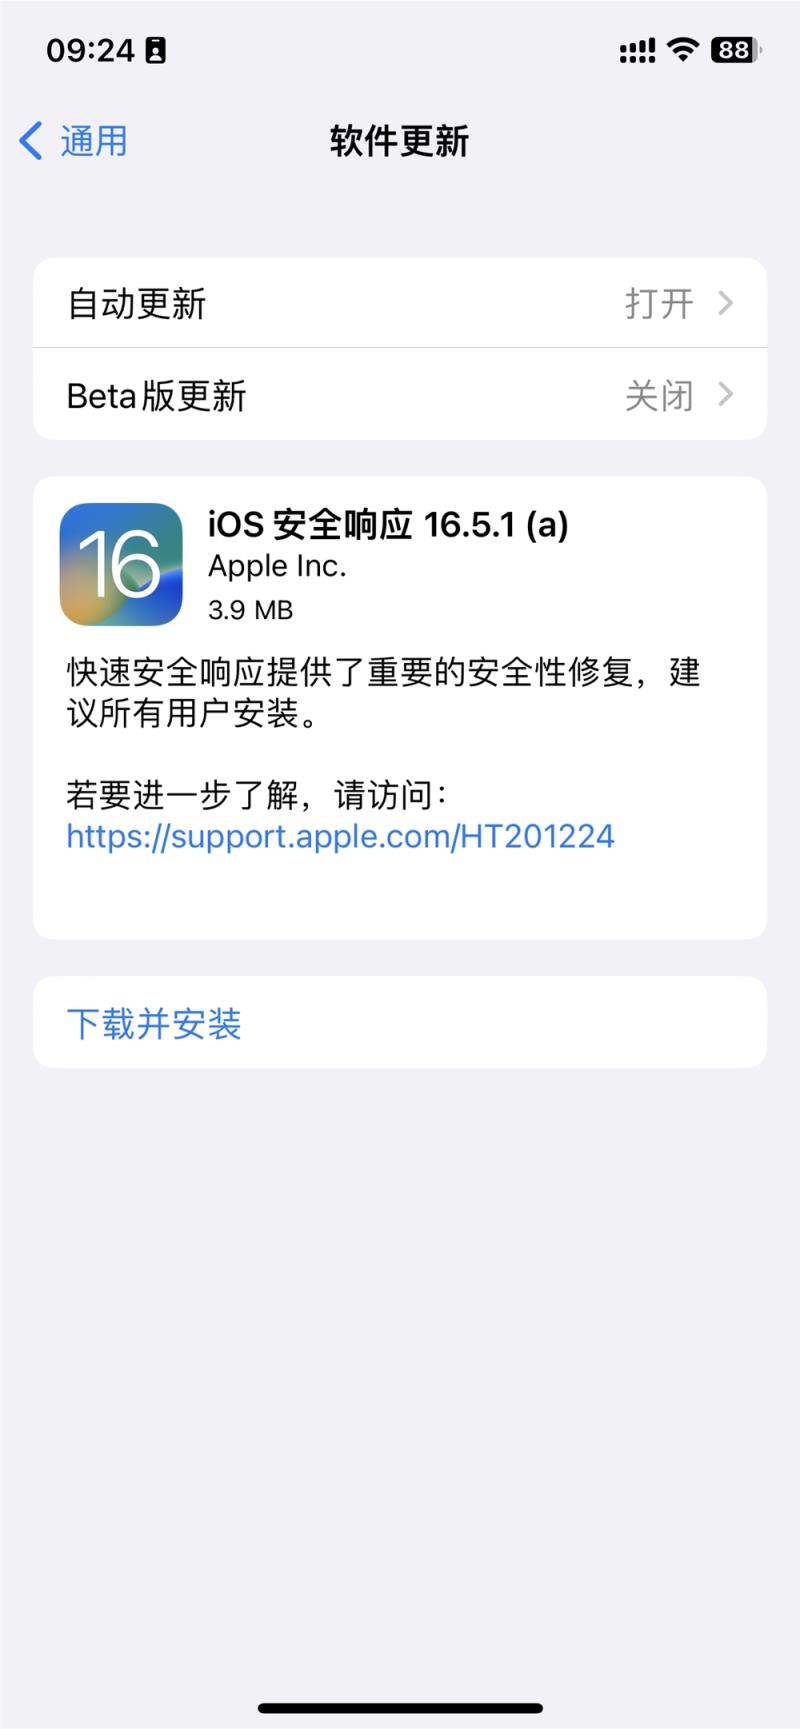 苹果发布 iOS 16.5.1 和 macOS 13.4.1 快速安全响应更新：修复被主动利用的漏洞